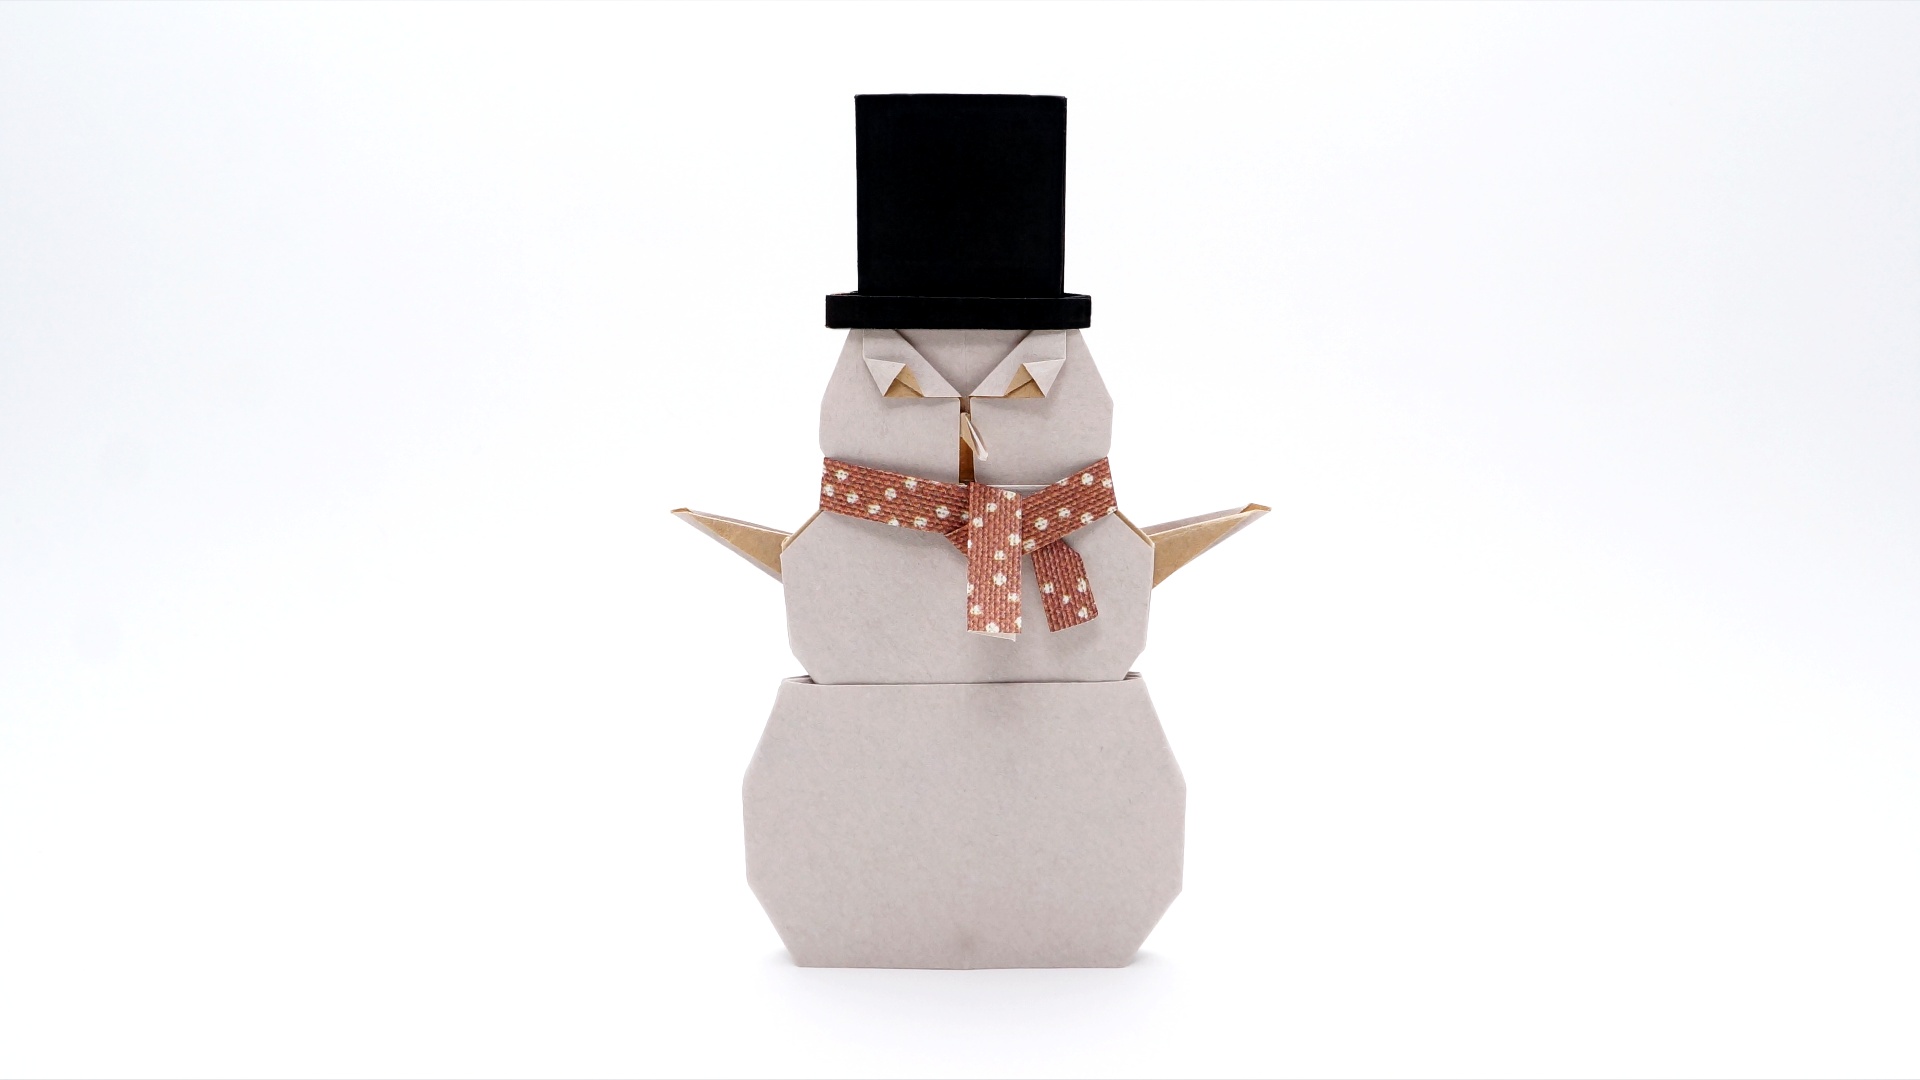 Origami Snowman by Jo Nakashima